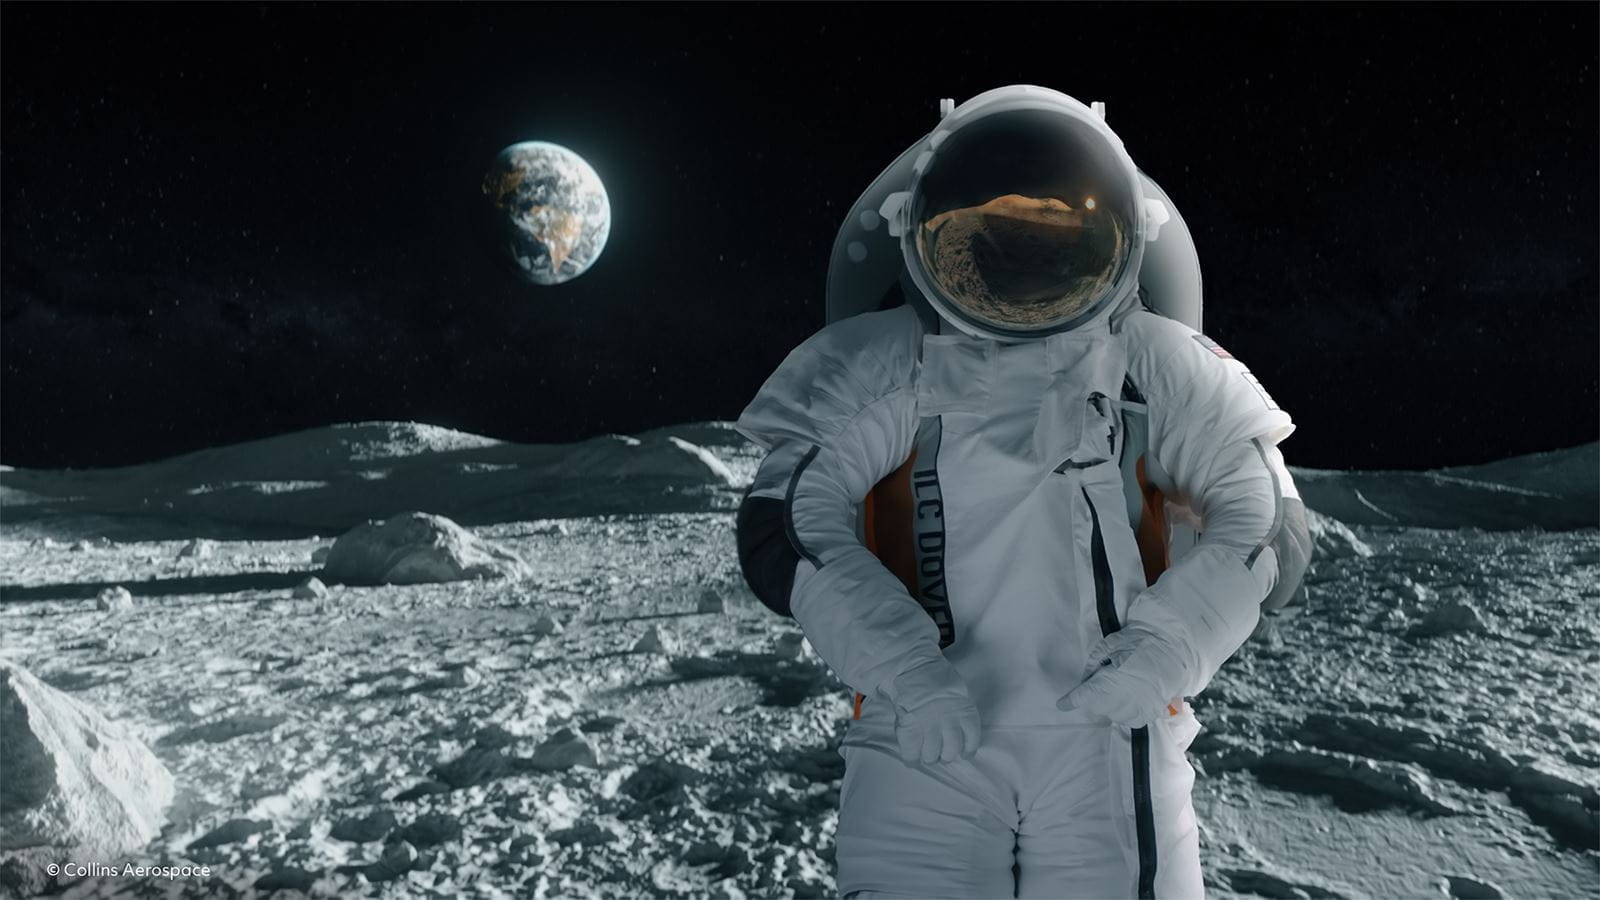 Collins Aerospace a fost selectat să ofere sisteme de susținere a vieții pentru următoarea generație de costume spațiale care vor duce astronauții înapoi pe Lună.